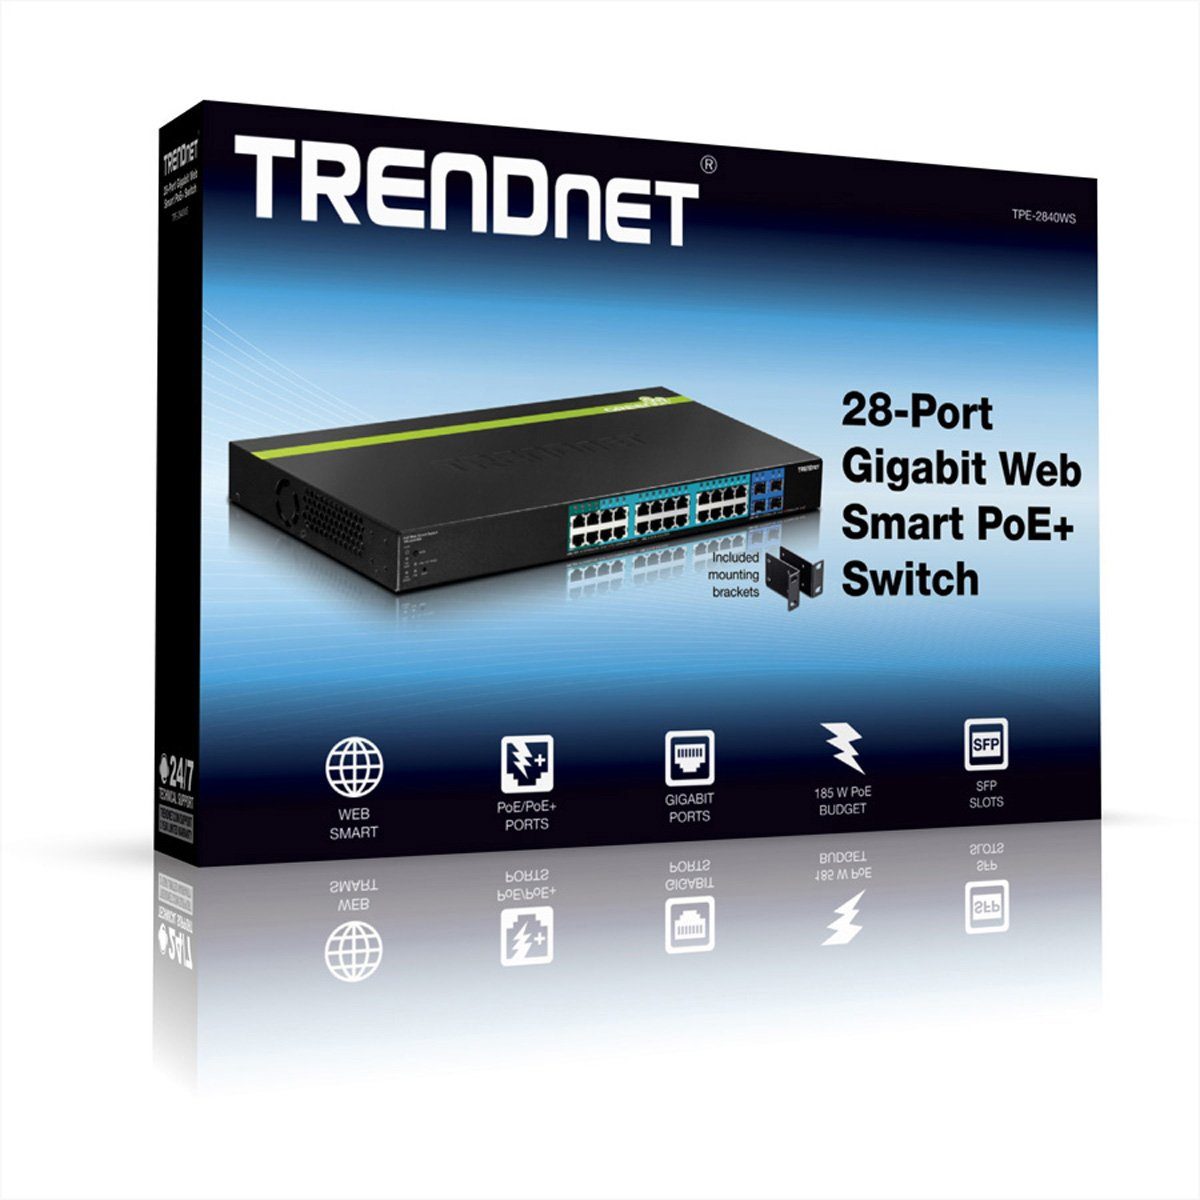 Trendnet Gigabit Switch TPE-2840WS Smart Netzwerk-Switch 24 PoE/PoE+ 28-Port 4 SFP 195W POE+